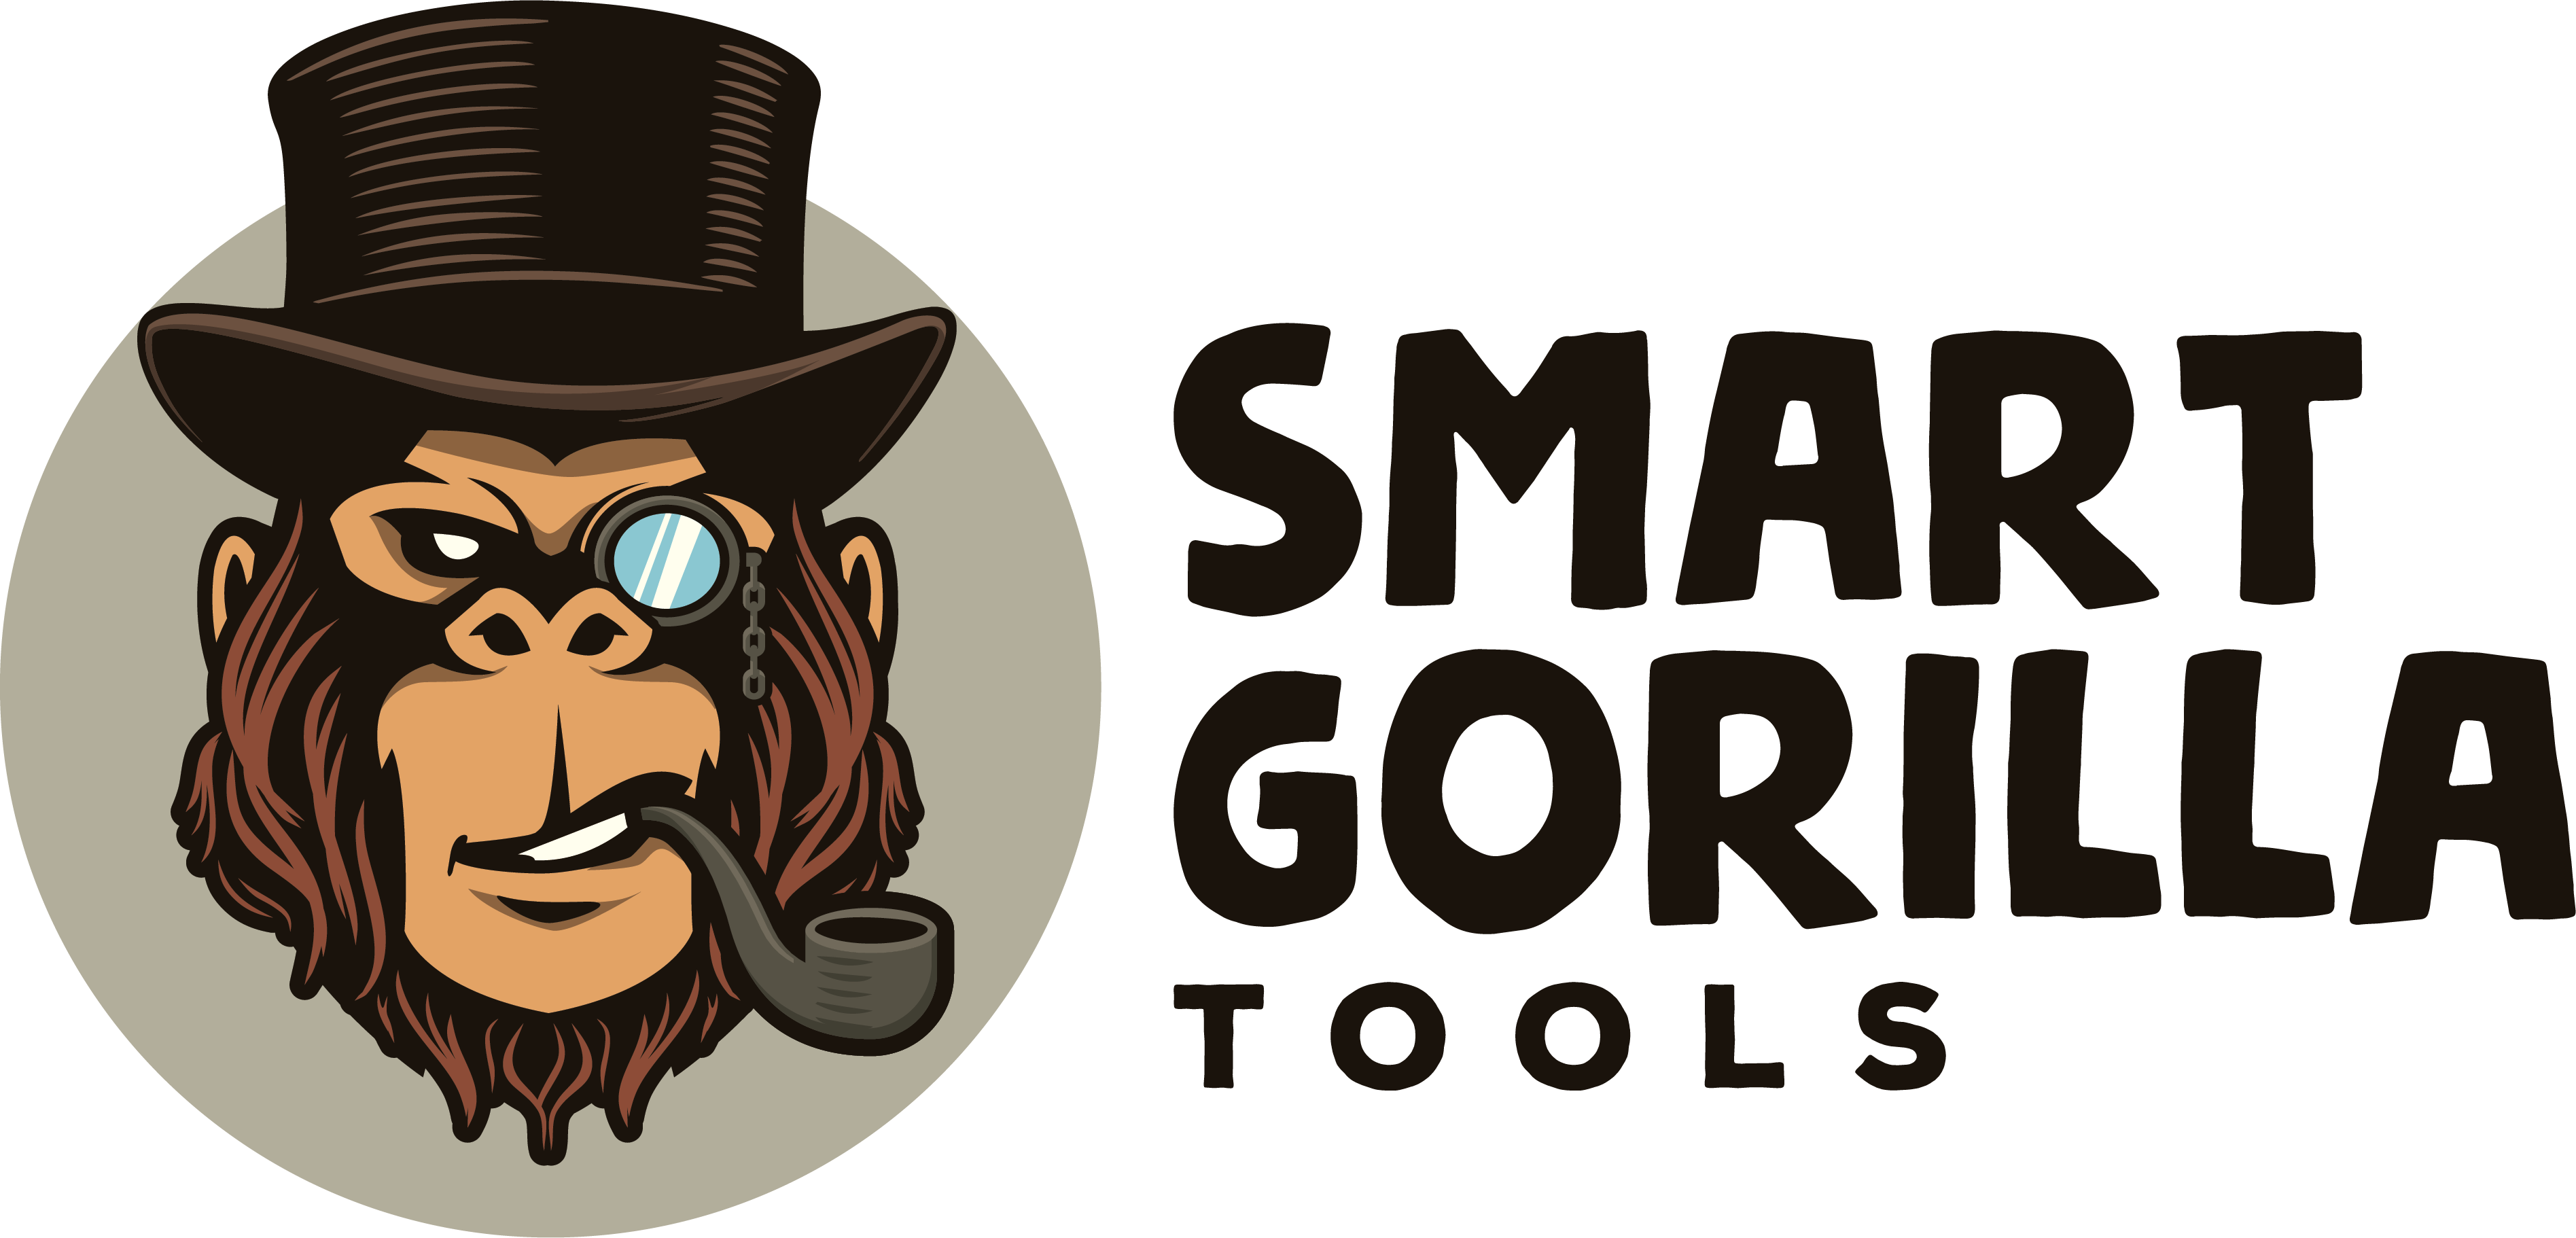 Smart Gorilla Tools - Bento Box Shop Logo